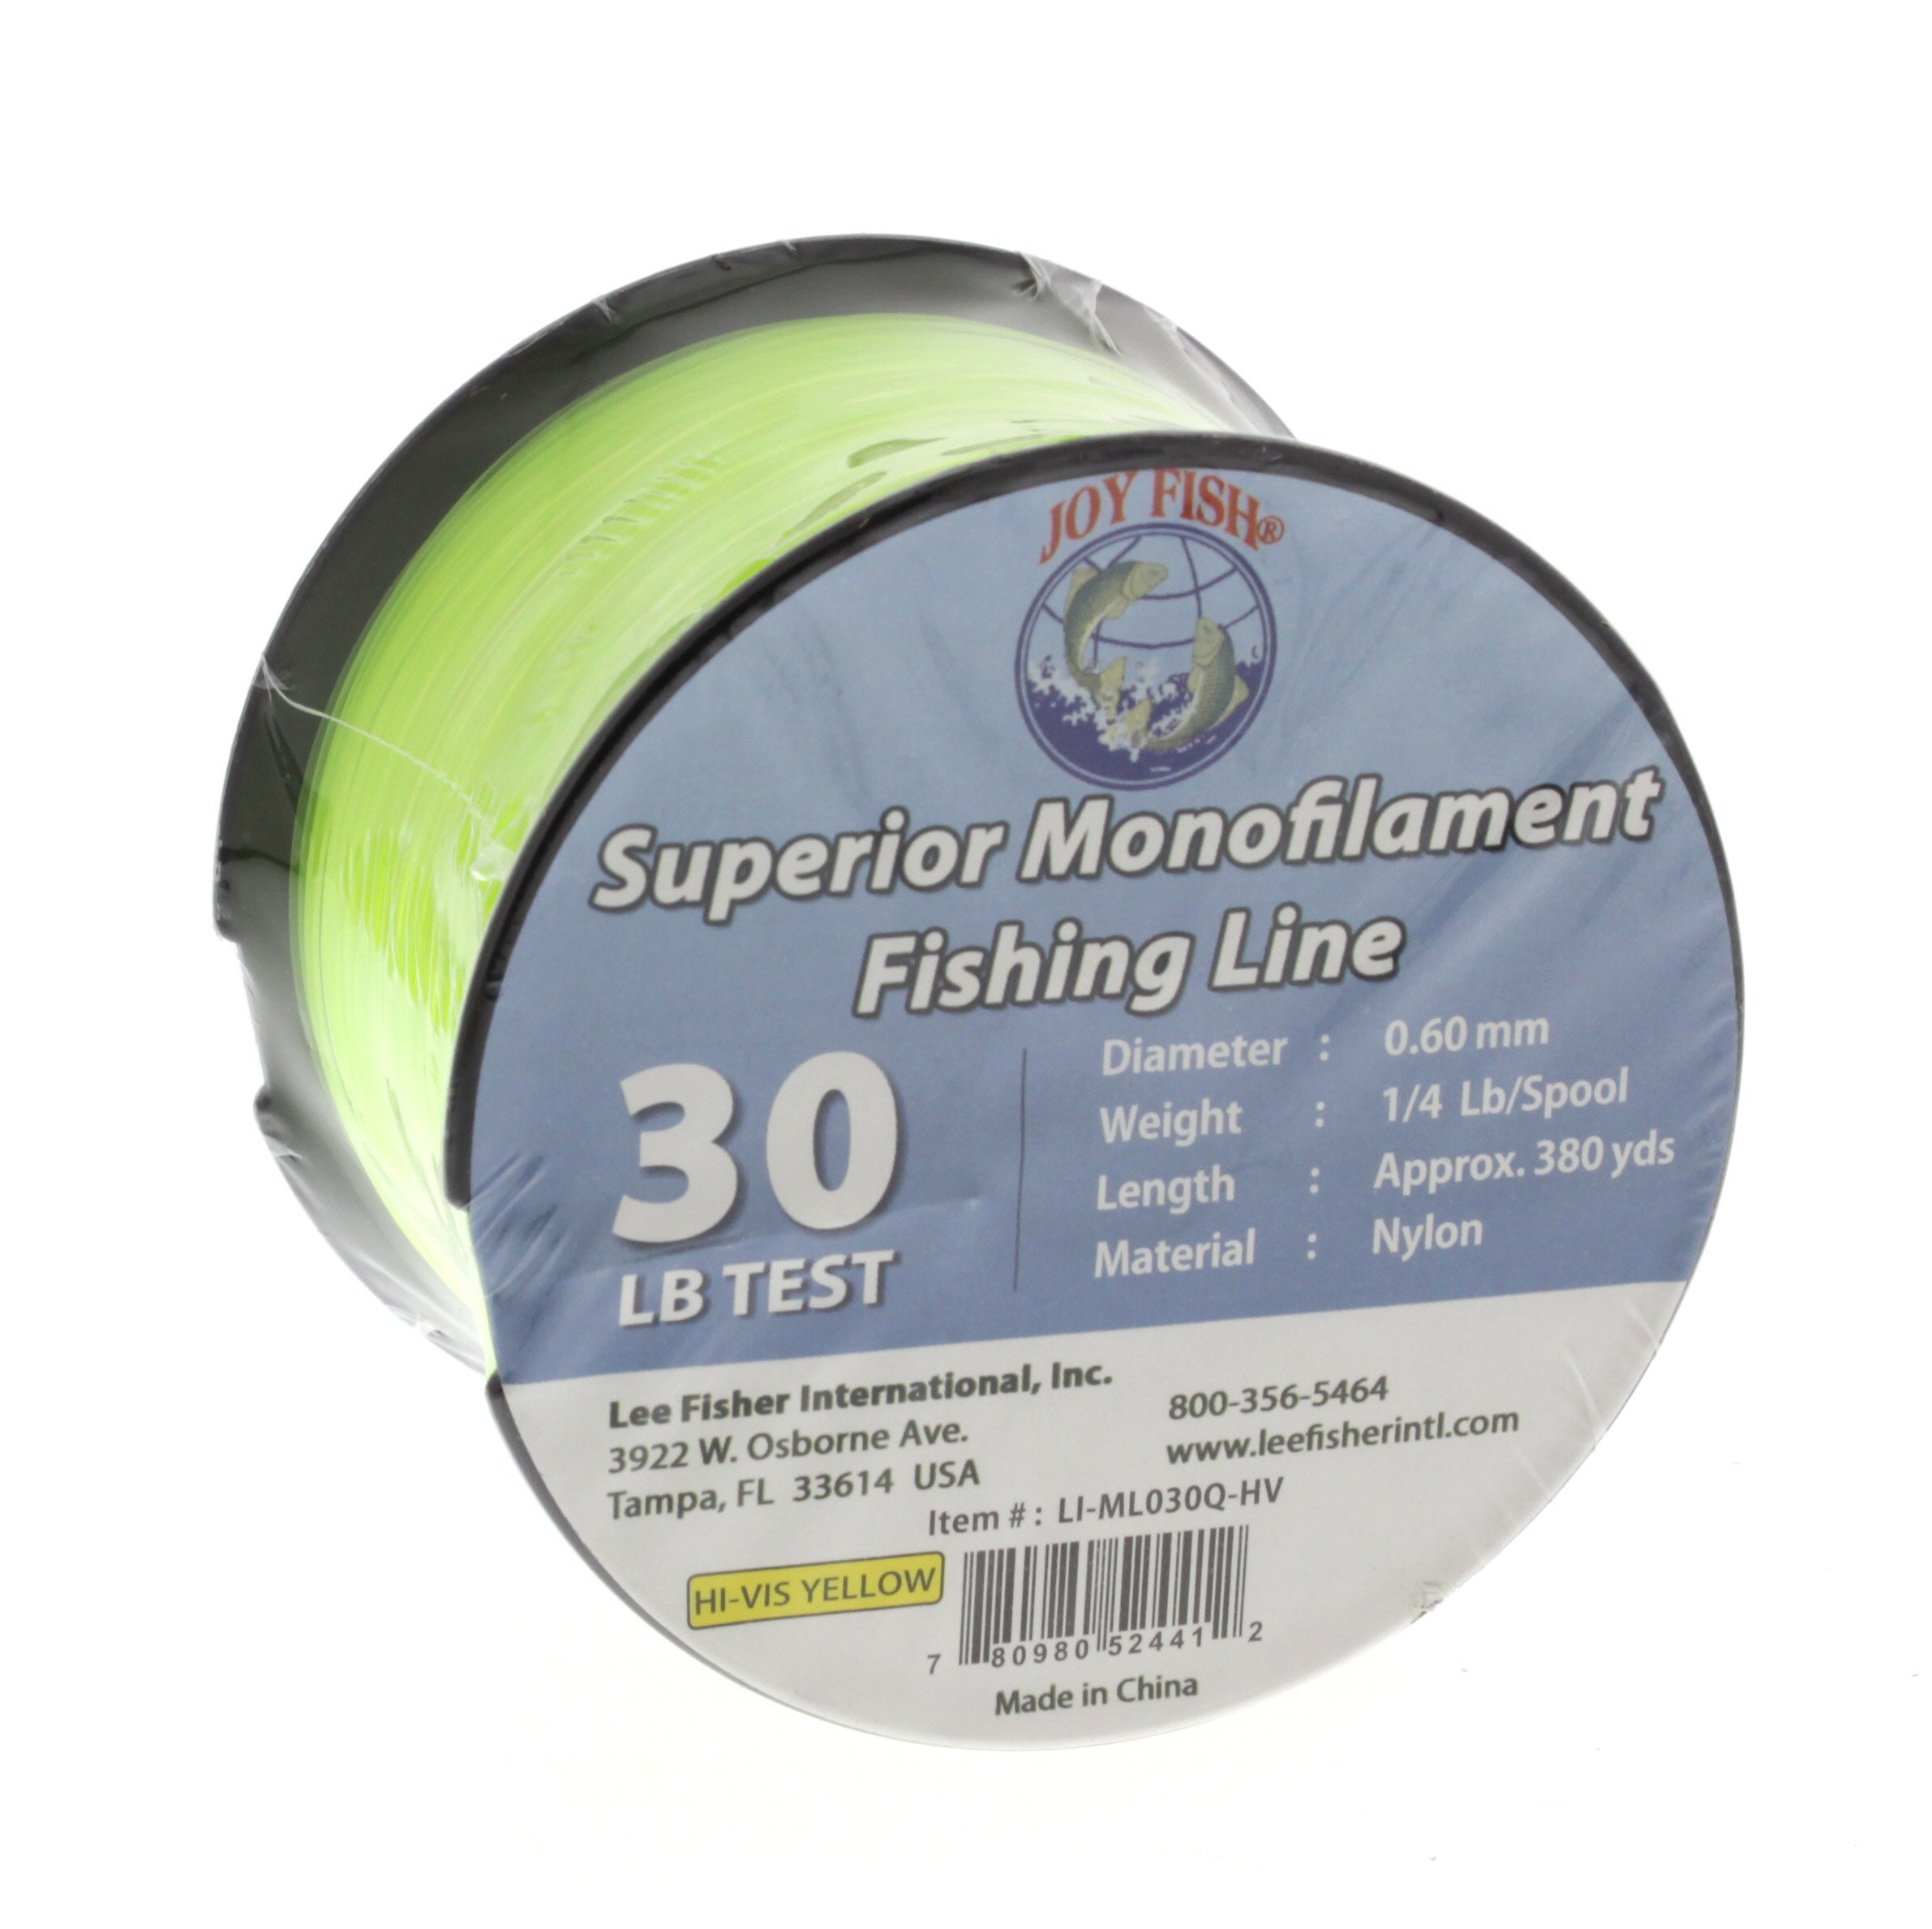 Joy Fish Monofilament Fishing Line - 1/4 LB Spool